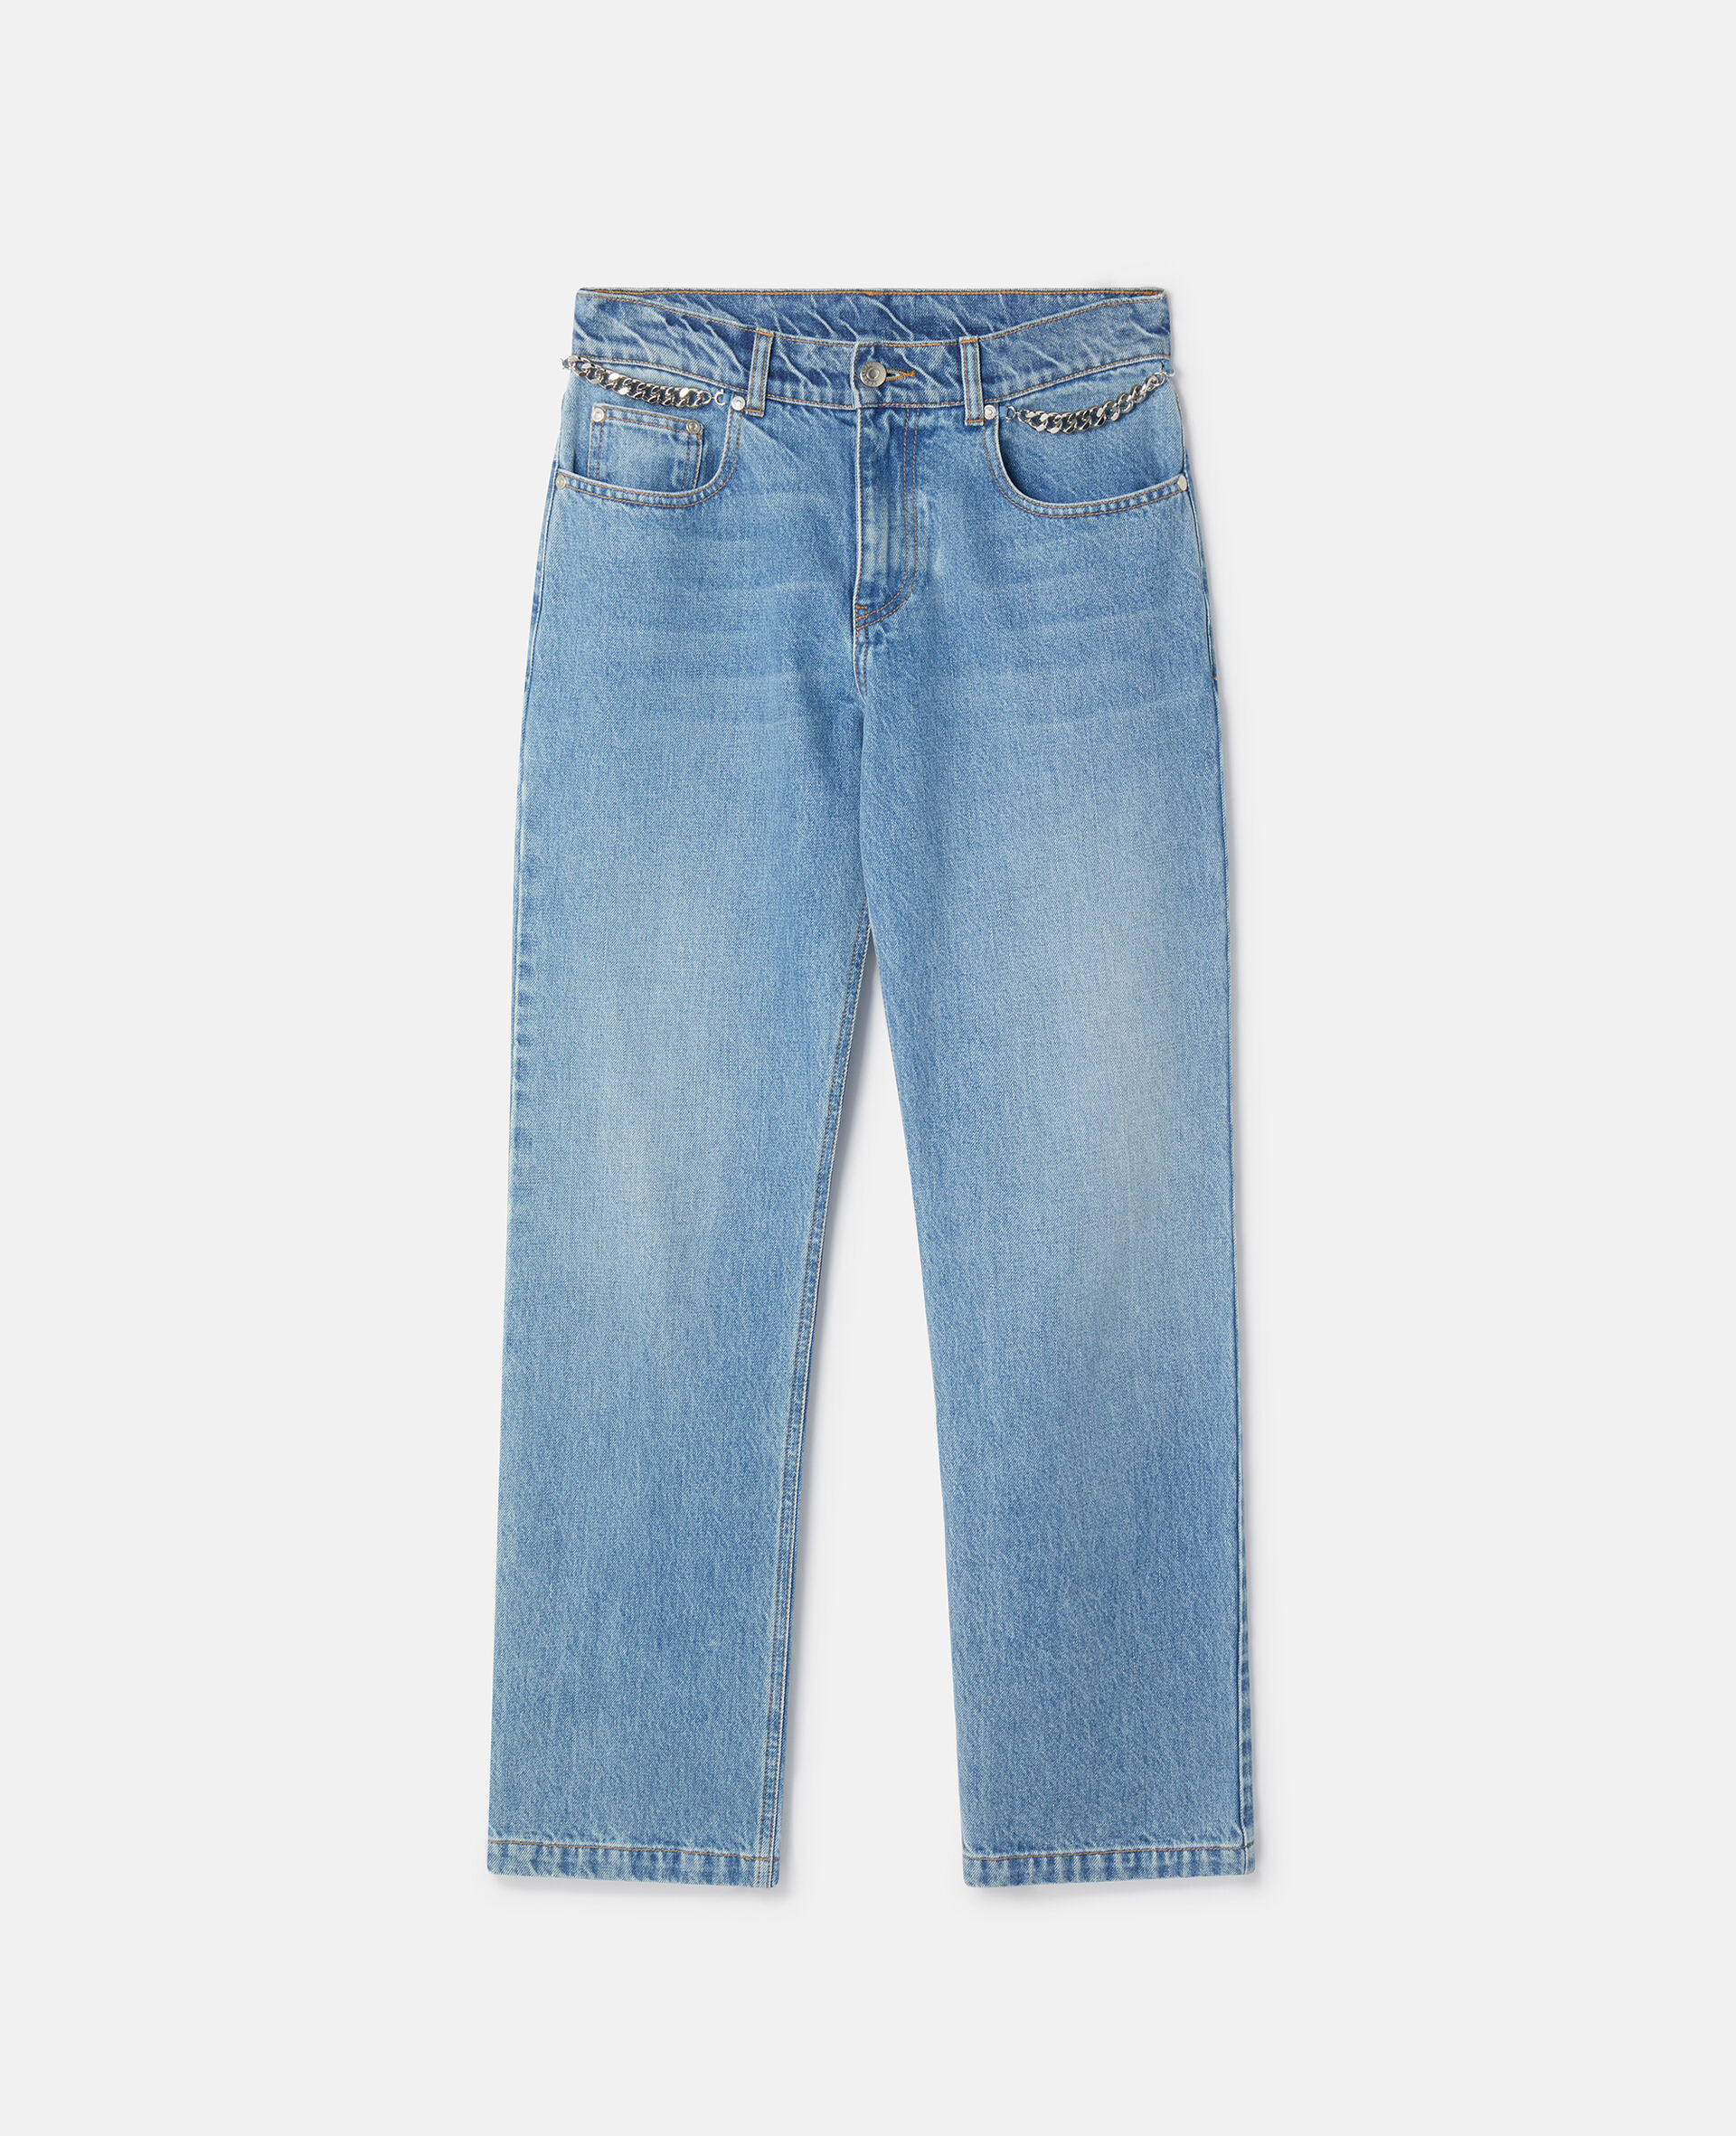 Jeans cropped Falabella lavaggio chiaro con catena-Blu-medium